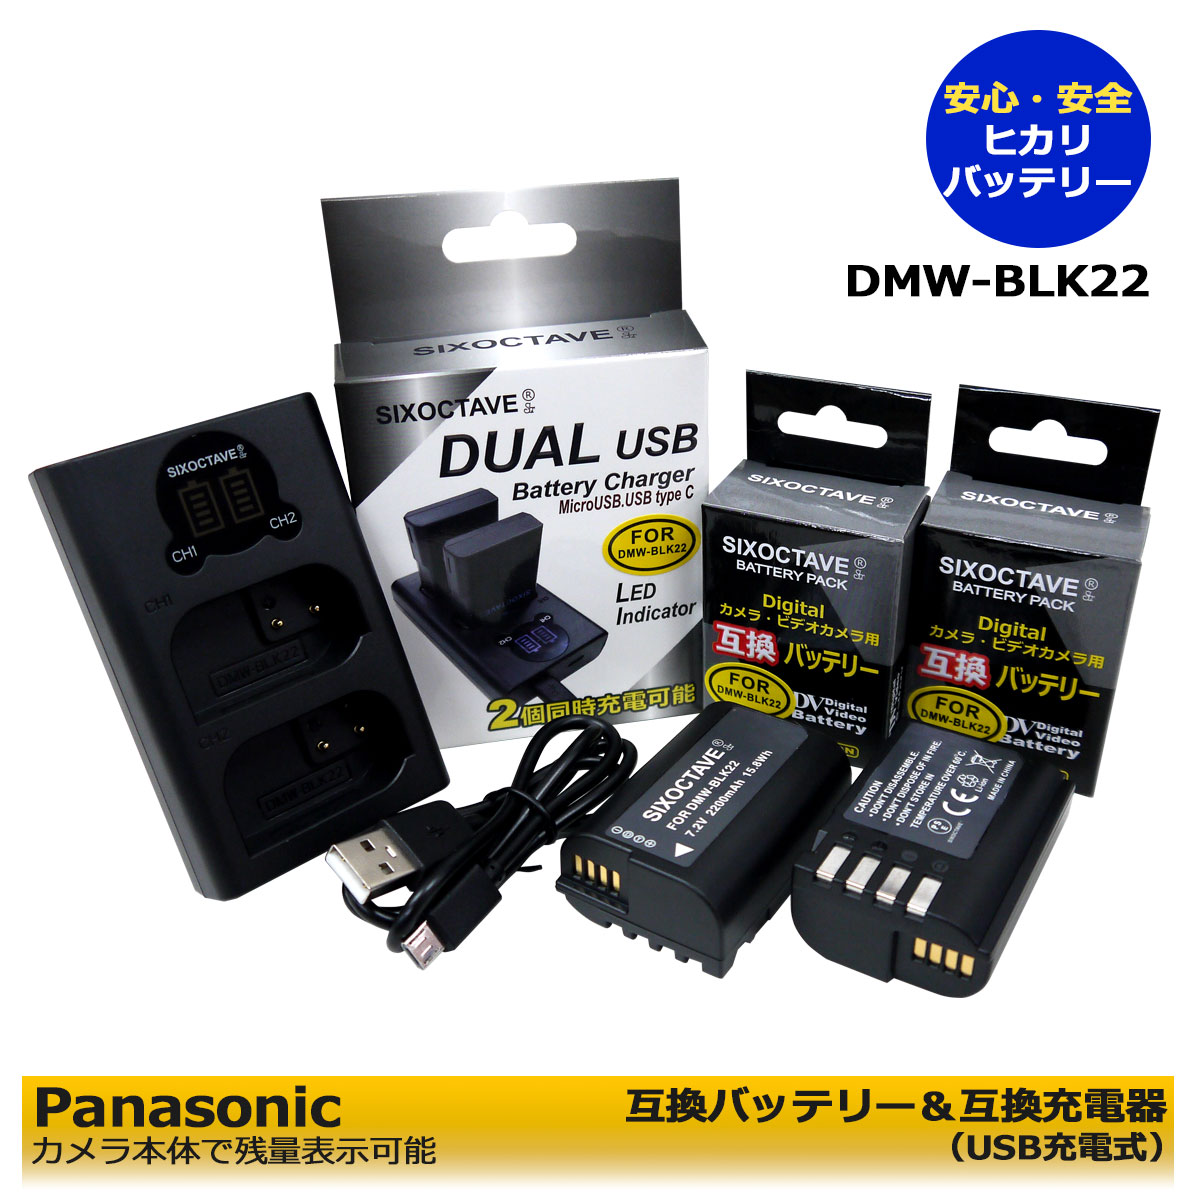 流行 DMW-BLK22 送料無料 PANASONIC 互換バッテリー 2個 と DUAL 互換